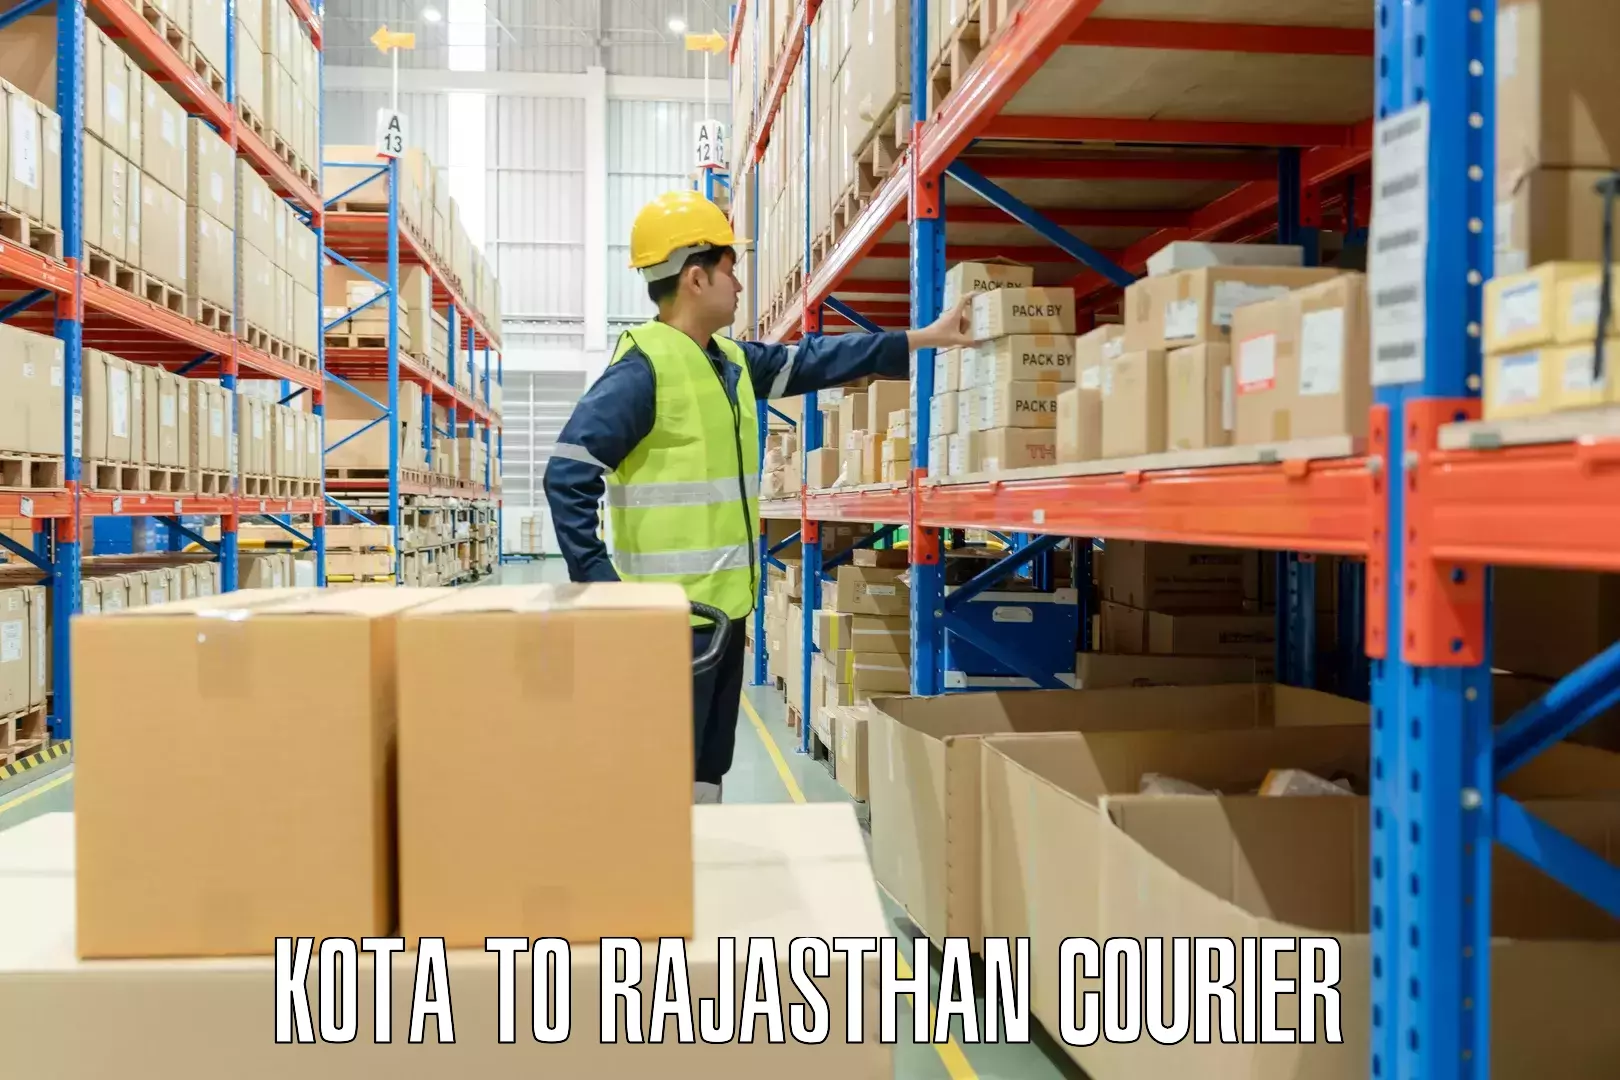 Baggage shipping experts Kota to Rajasthan